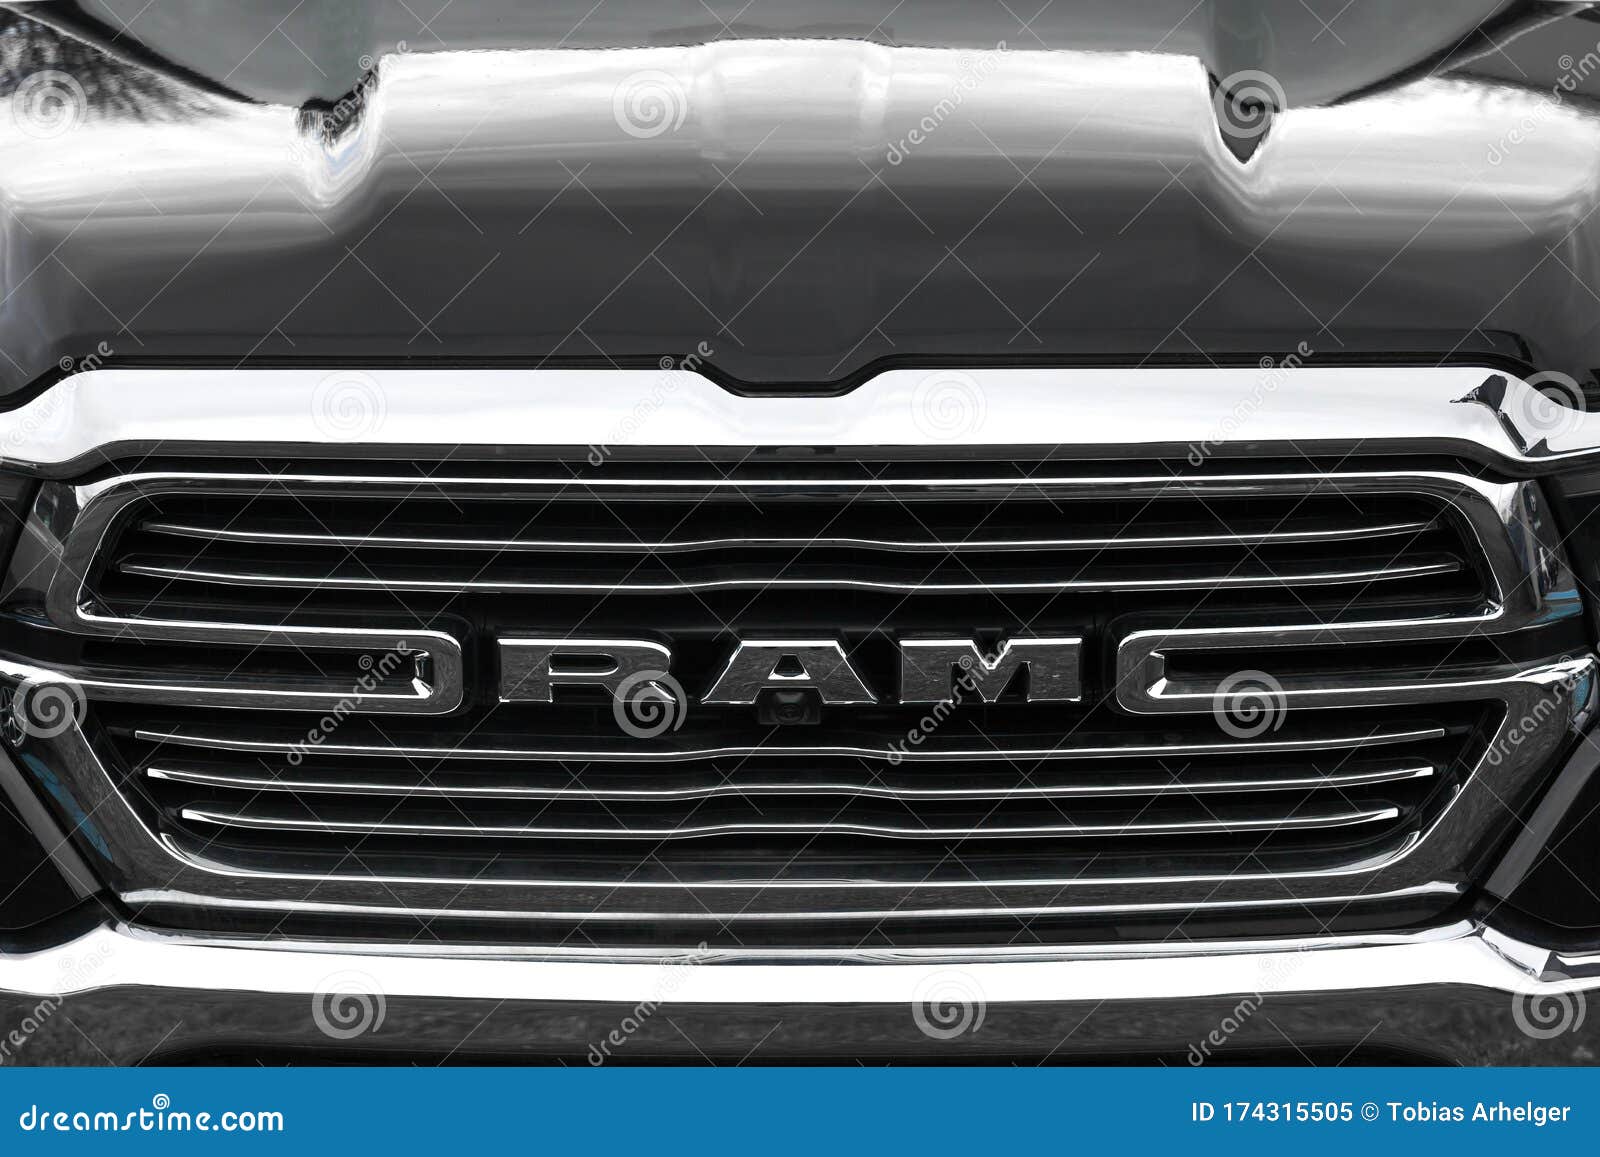 Dodge Ram Truck Logo Sign Siegen Germany Editorial Image - Image of dodge,